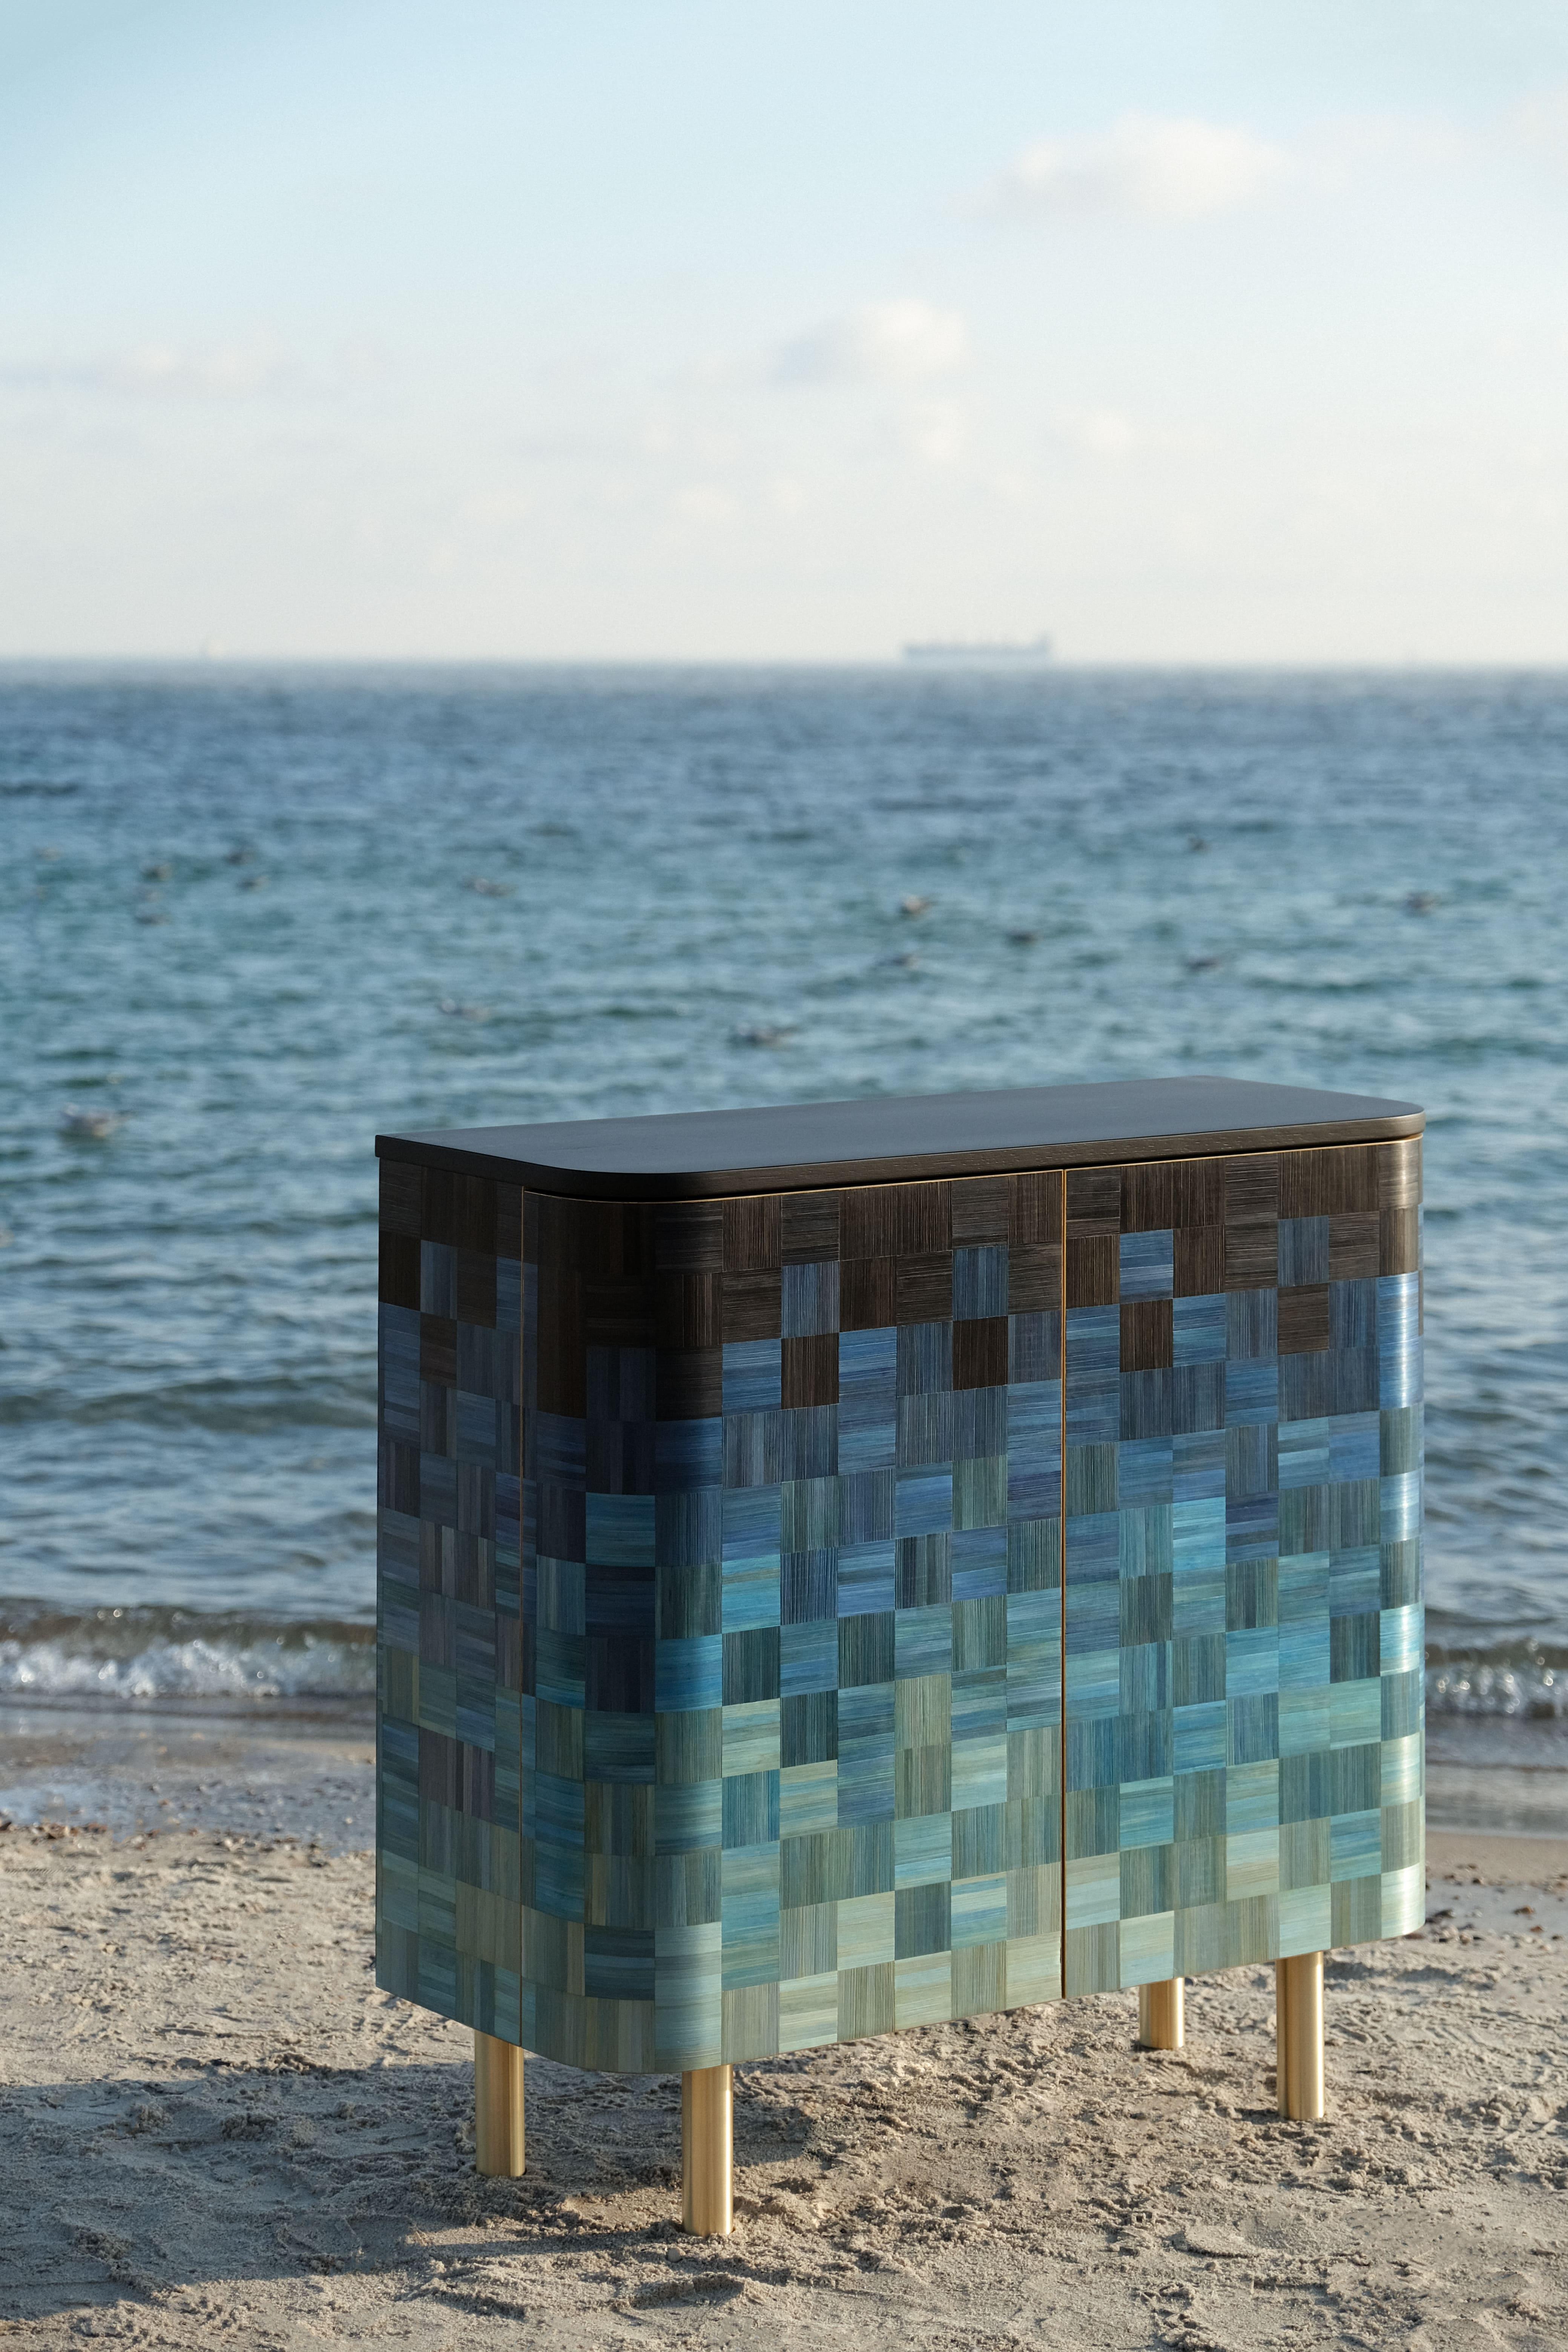 Bienvenue au nouveau meuble de la collection Natura aux couleurs de la mer Noire.
Une continuation de l'ode aux ressources et à la nature de notre terre.
Le meuble est fabriqué à la main et incrusté de paille peinte.
L'eau est un conduit et un